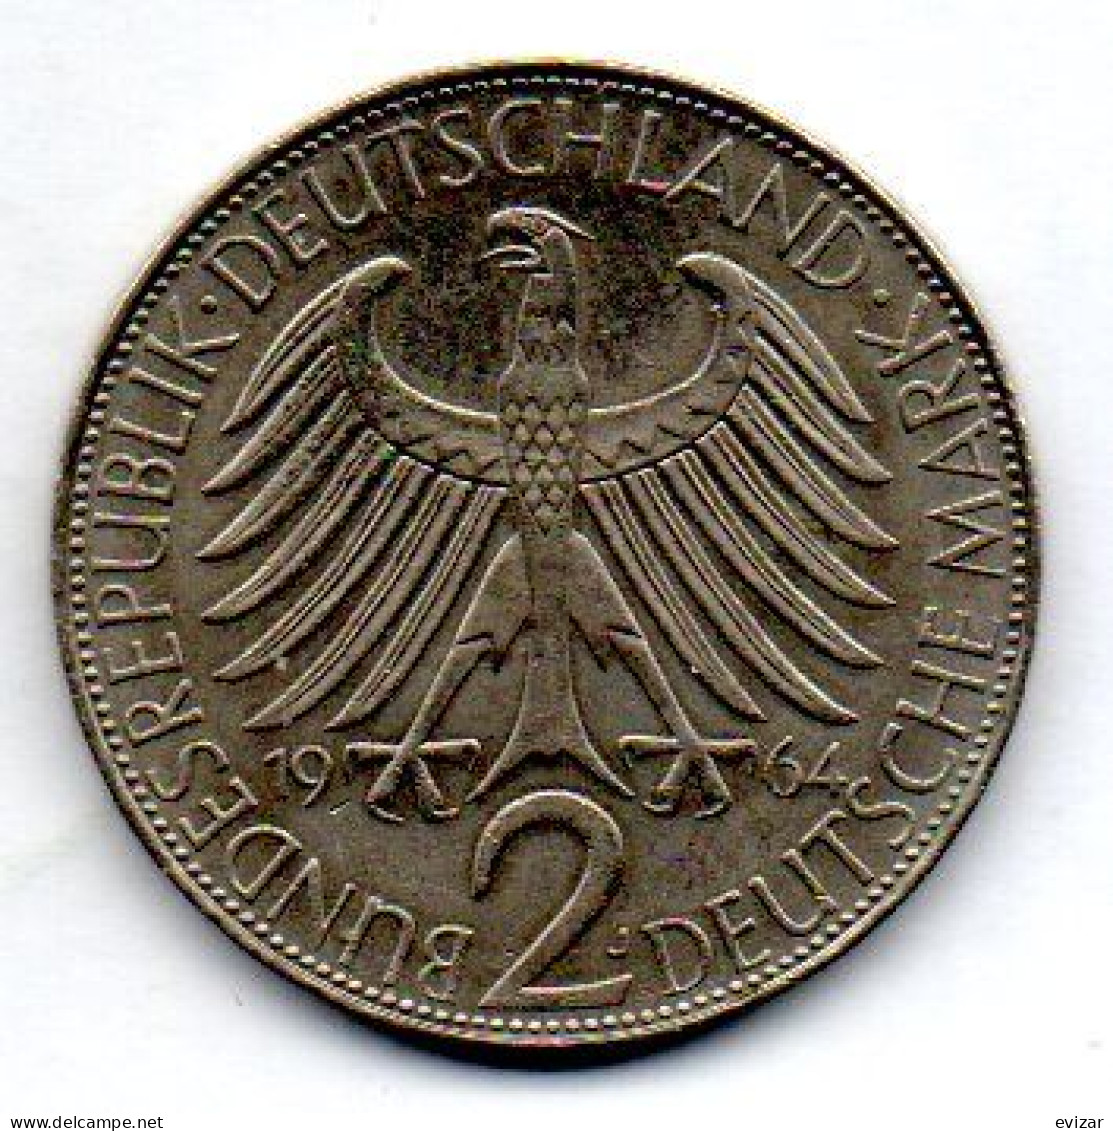 GERMANY - FEDERAL REPUBLIC, 2 Mark, Copper-Nickel, Year 1958-G, KM # 116 - 2 Mark